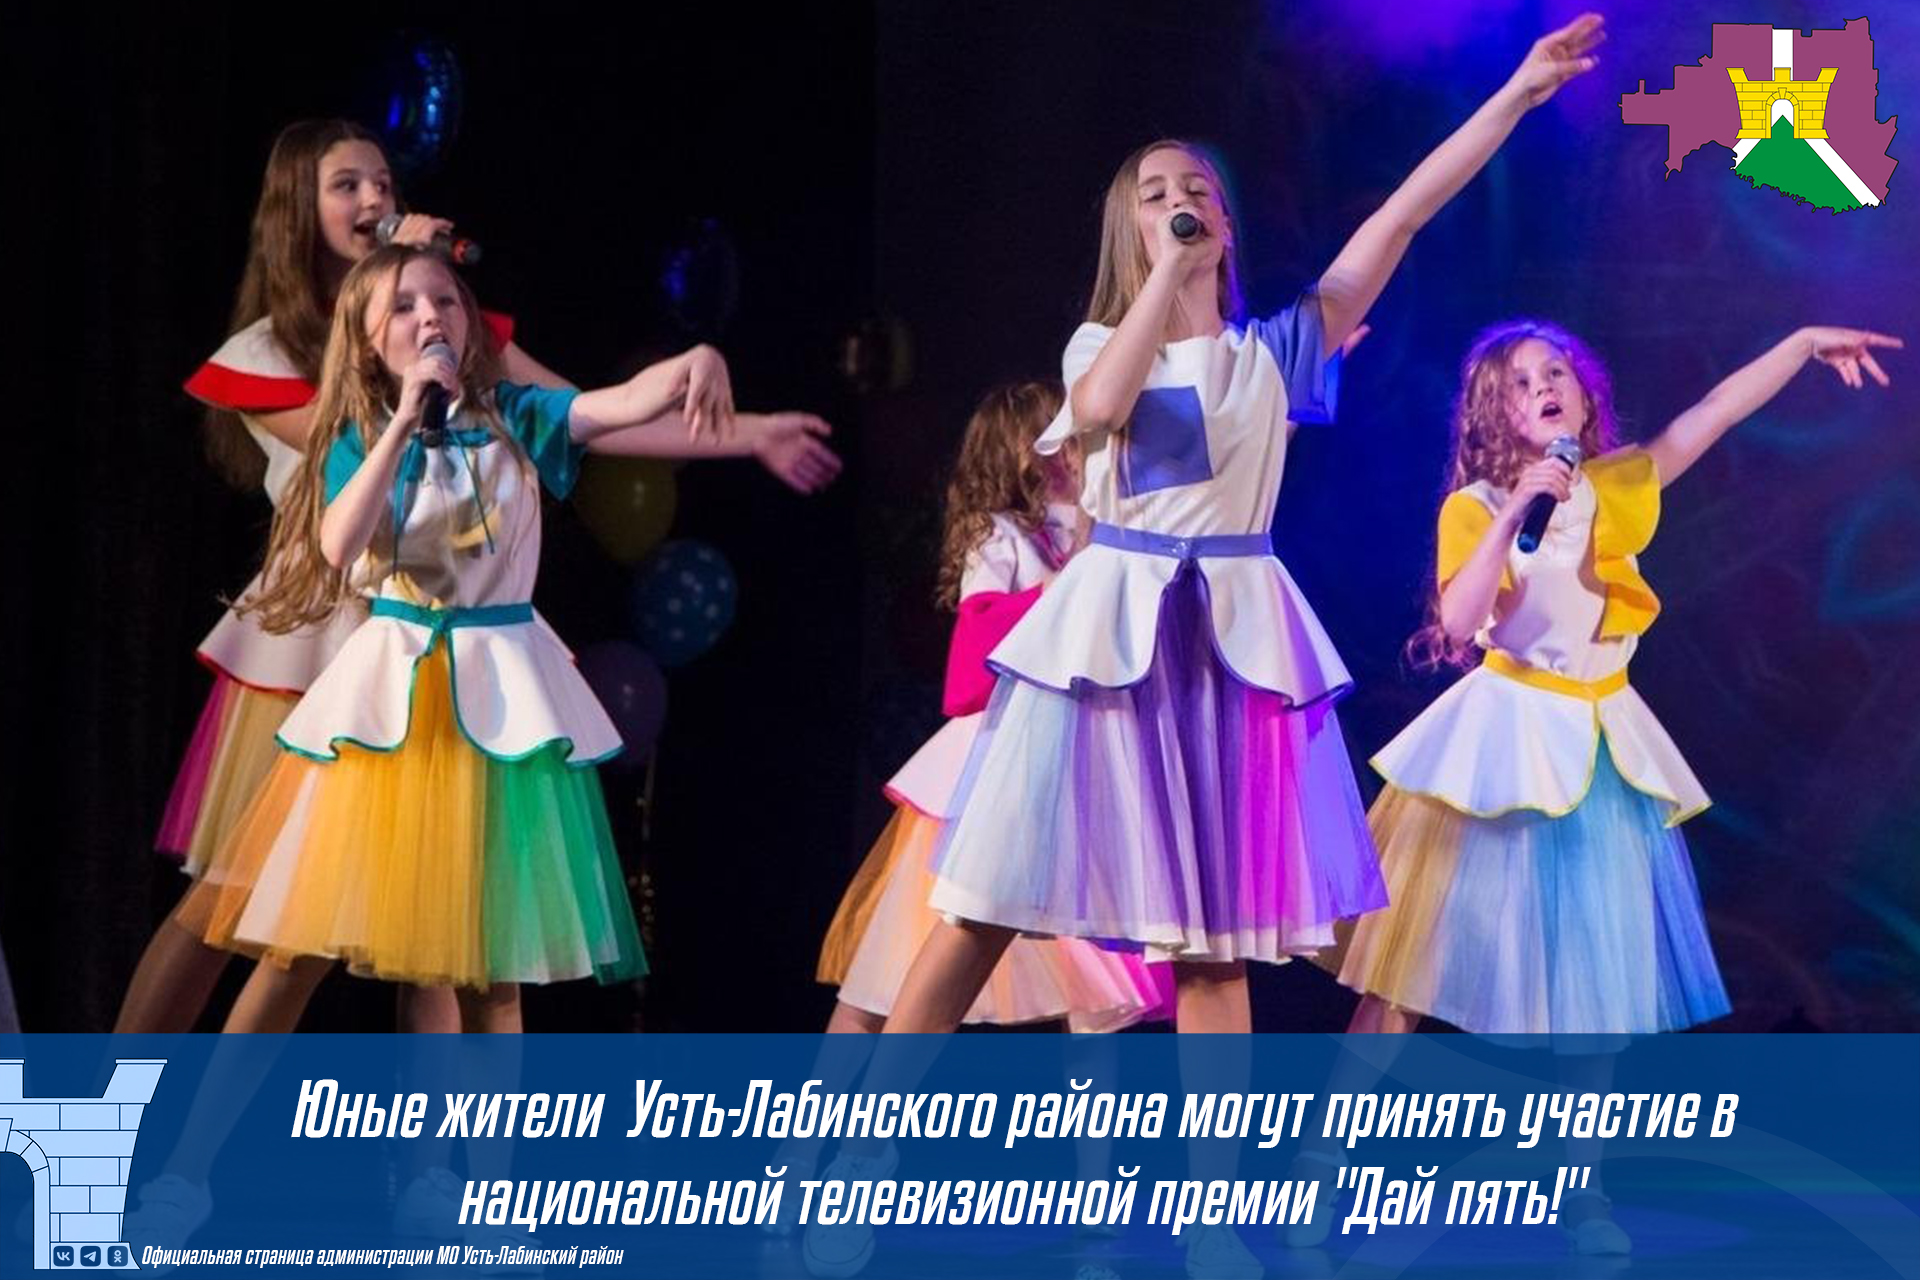 Юные жители  Усть-Лабинского района могут принять участие в национальной телевизионной премии "Дай пять!"